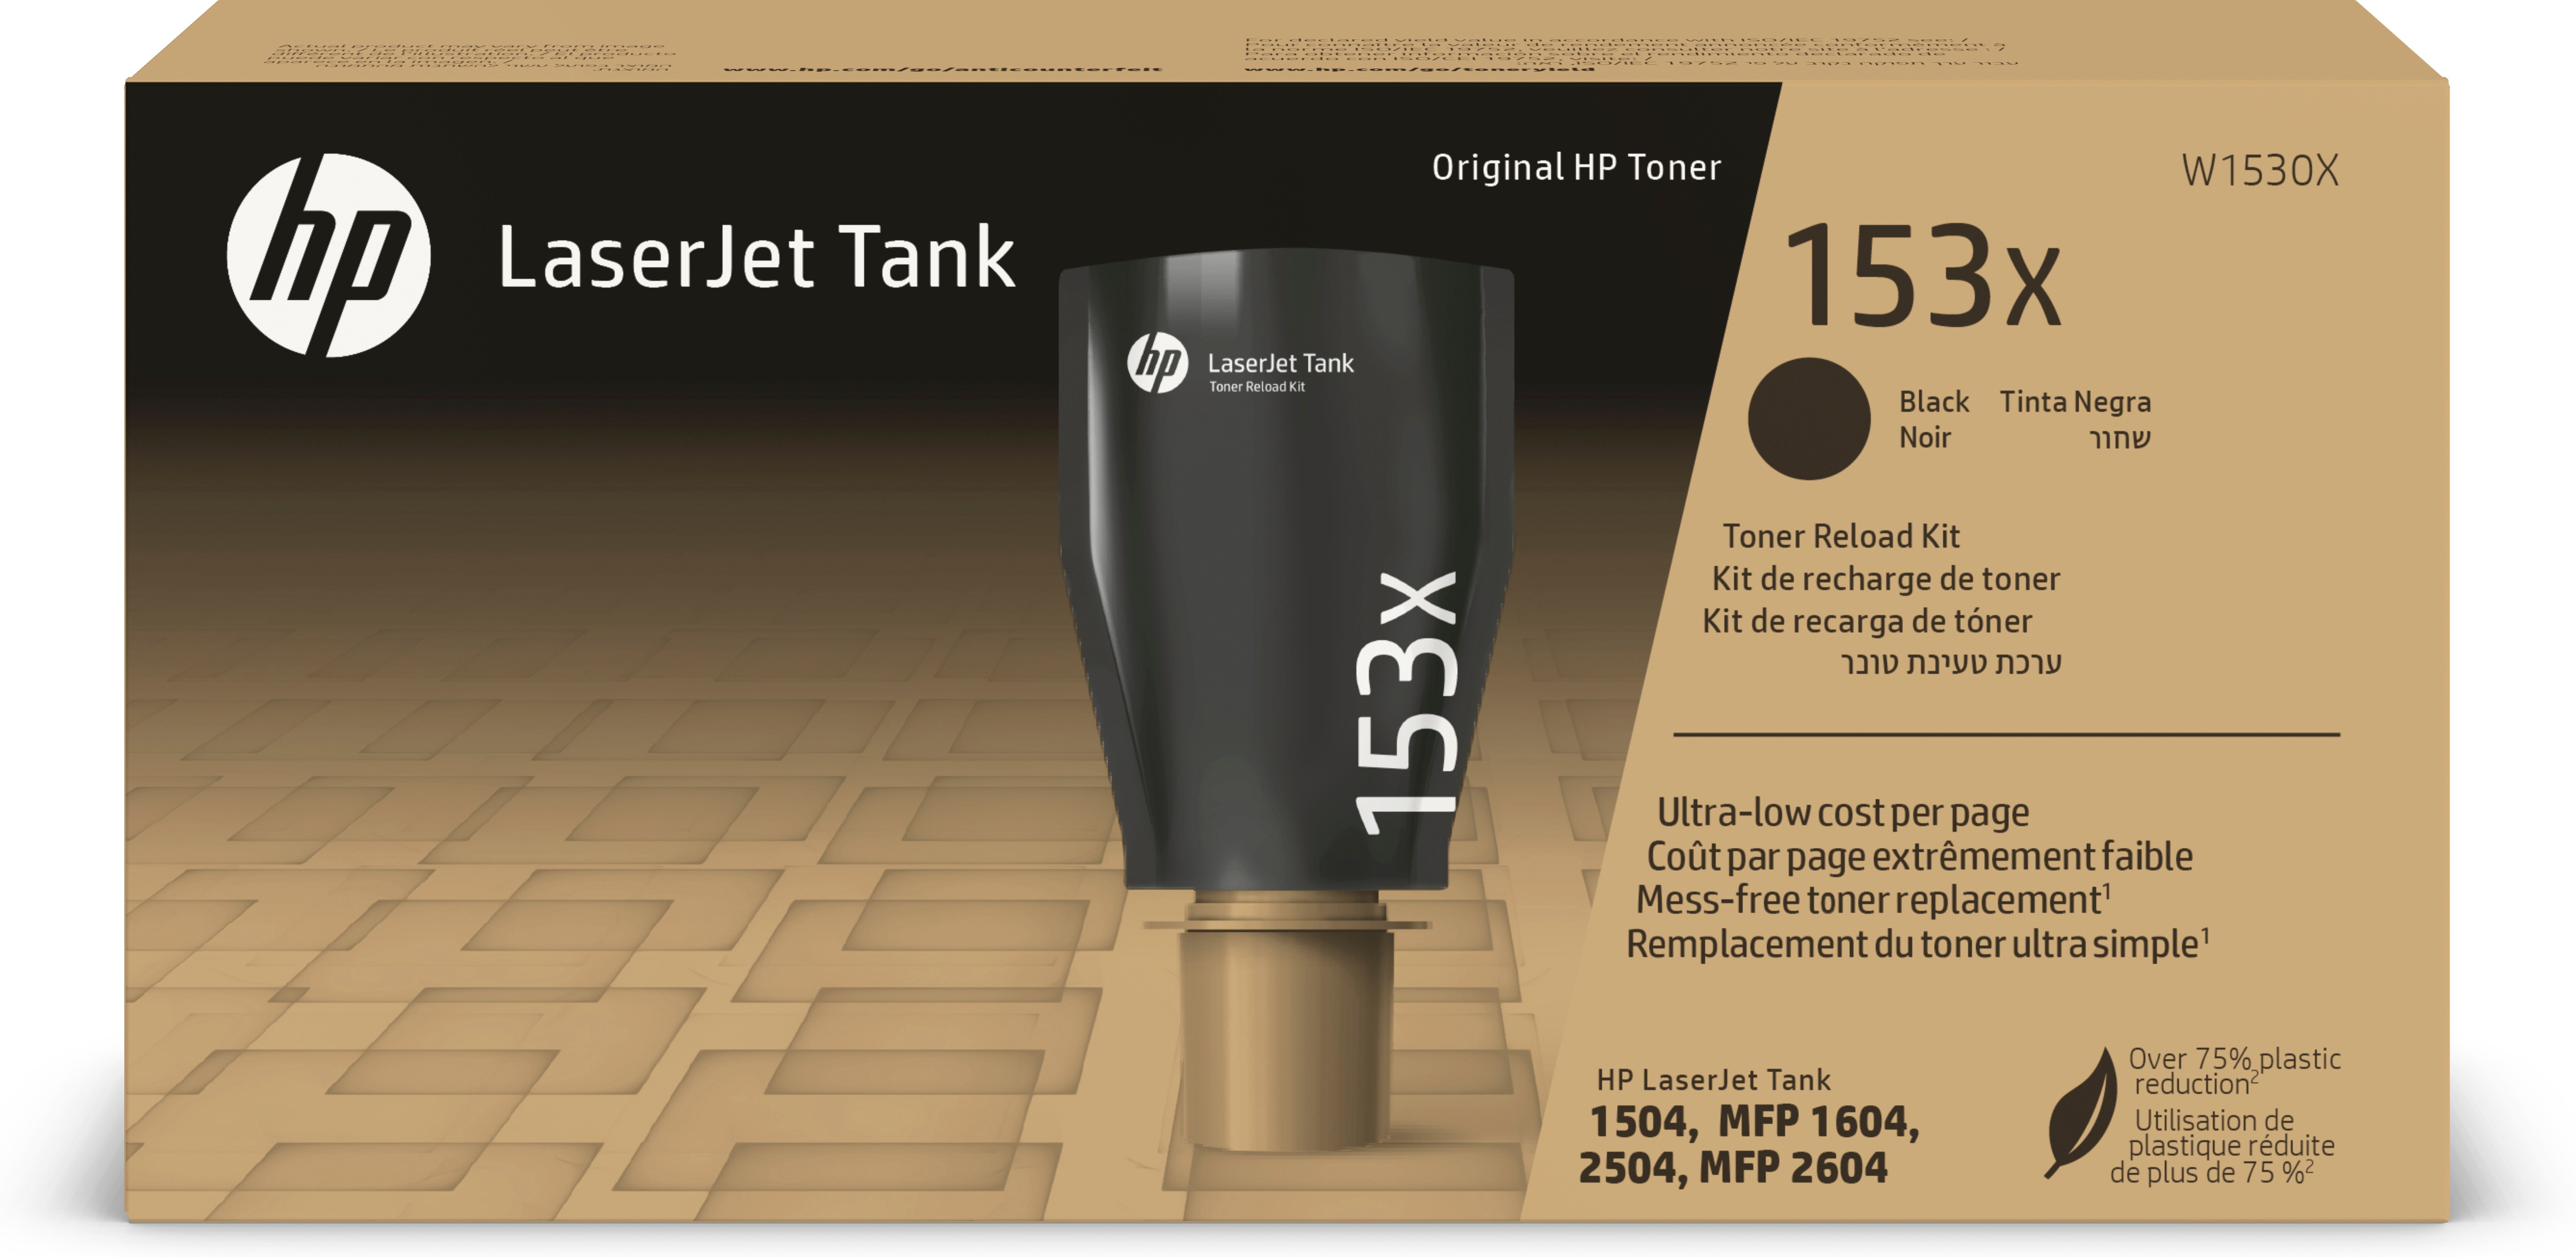 HP Kit de recarga de Toner 153X para laserJet Tank